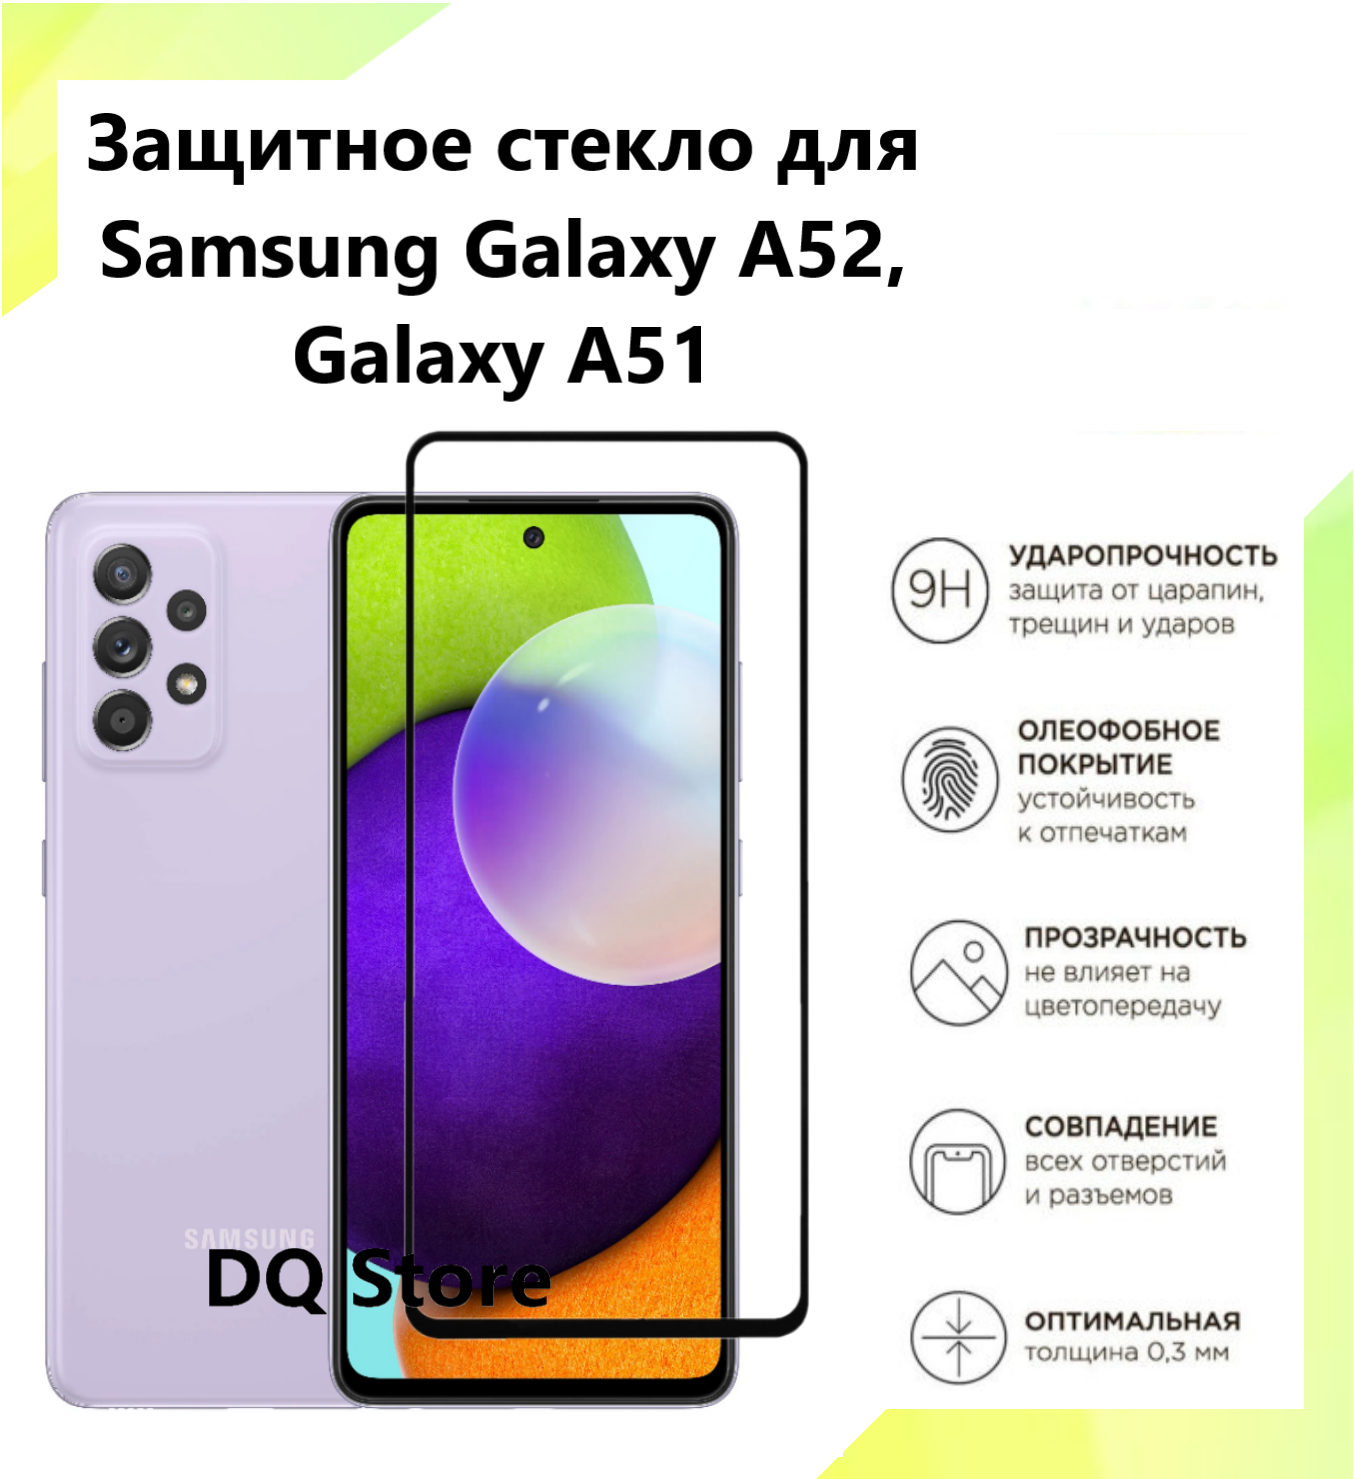 3 Защитных стекла на Samsung Galaxy A52 / Galaxy A51 . Полноэкранные защитные стекла с олеофобным покрытием